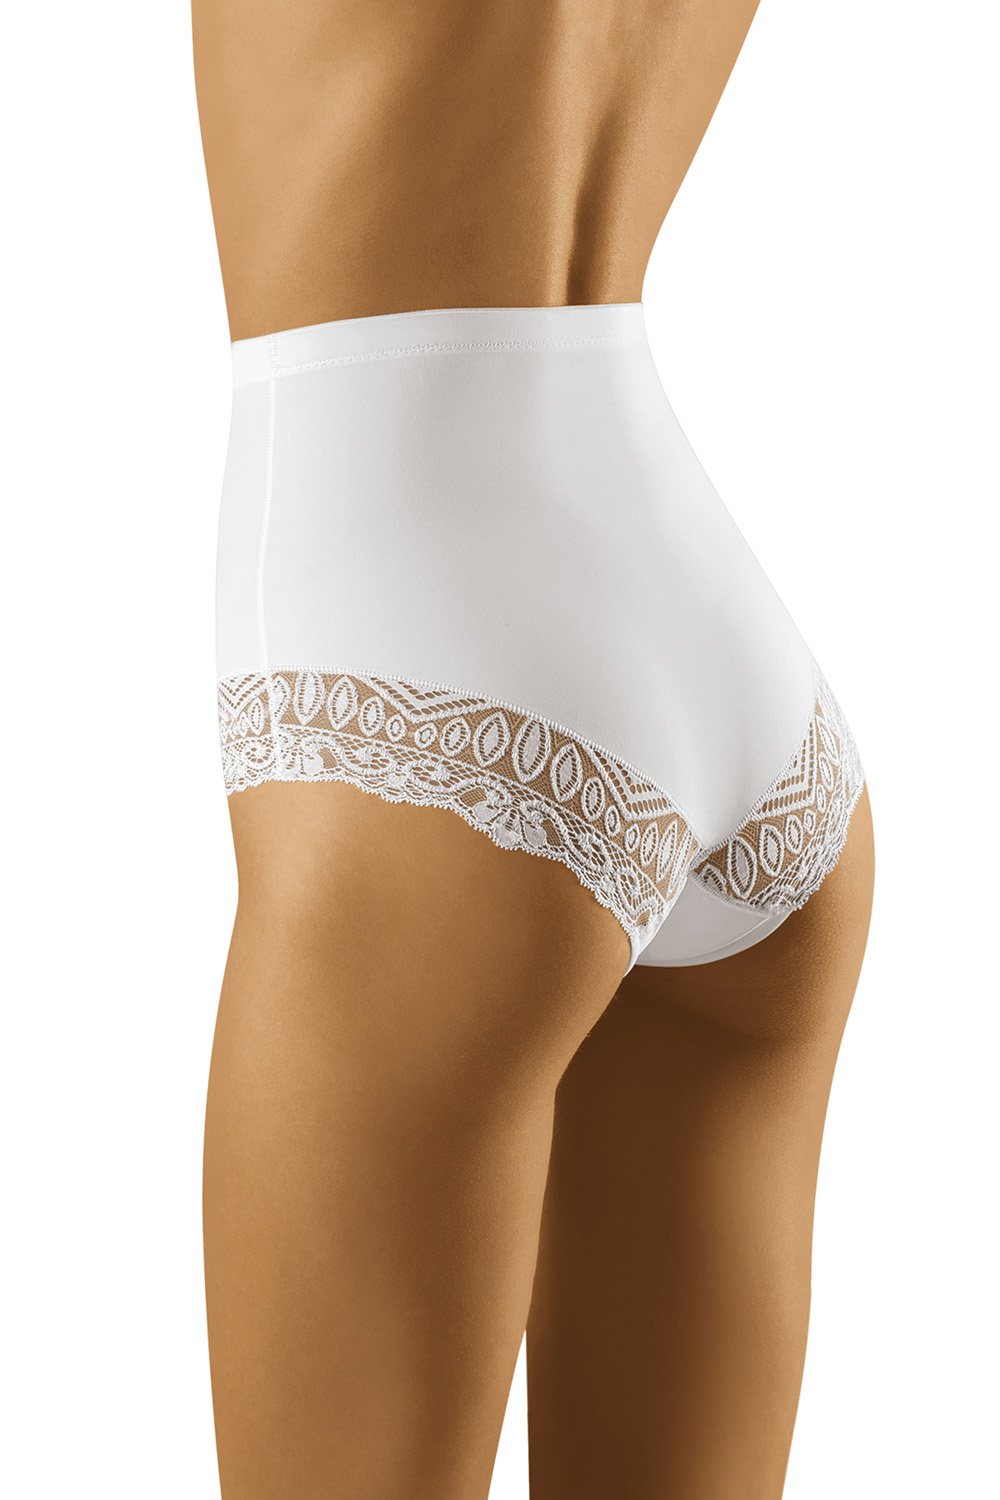 Panties model 156584 Wolbar white Ladies